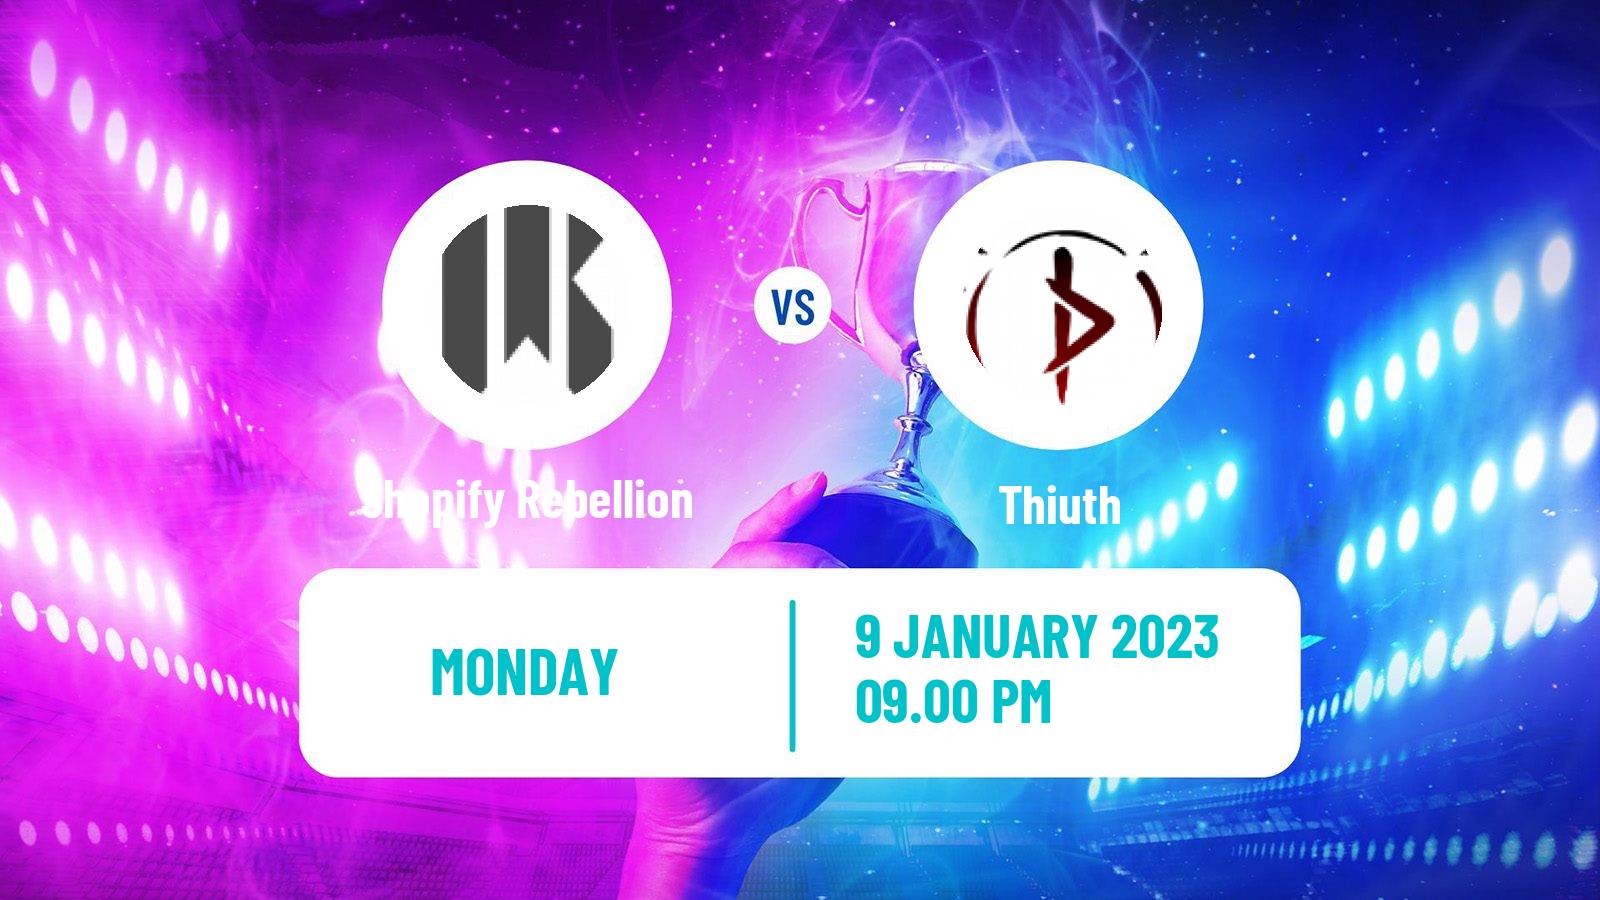 Esports eSports Shopify Rebellion - Thiuth